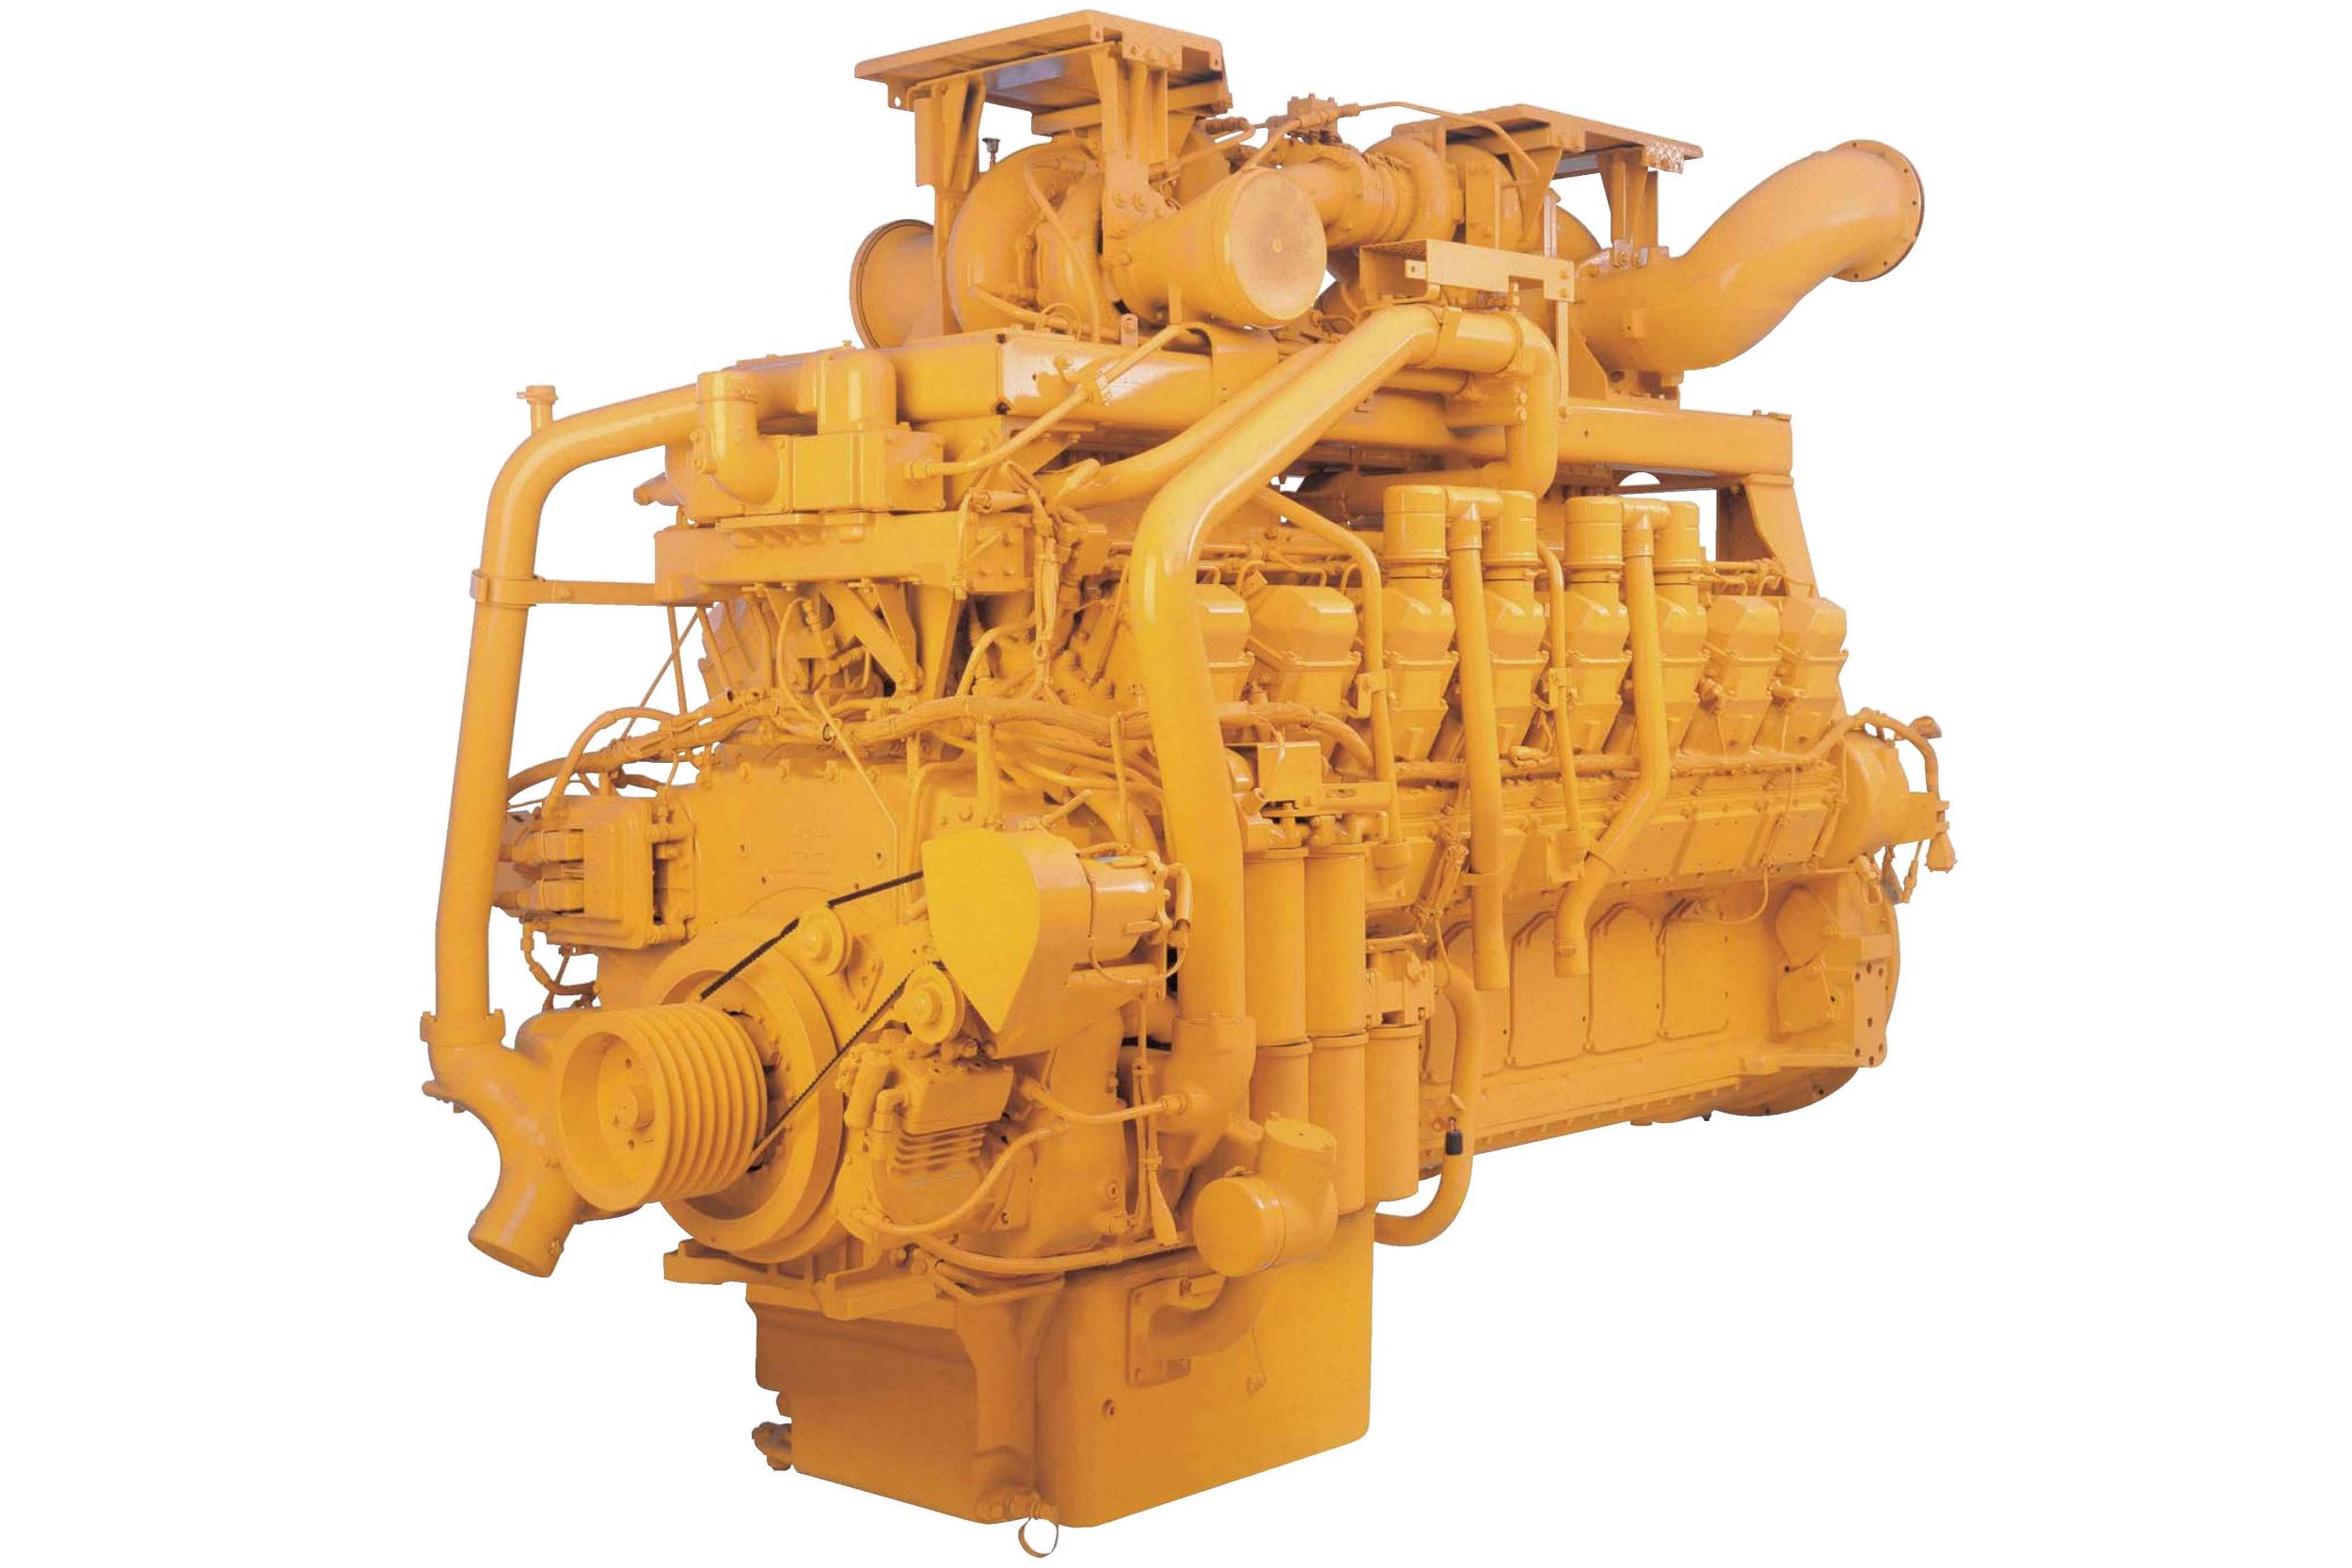 Motori diesel 3516B LRC - Aree non regolamentate o con regolamentazione minima